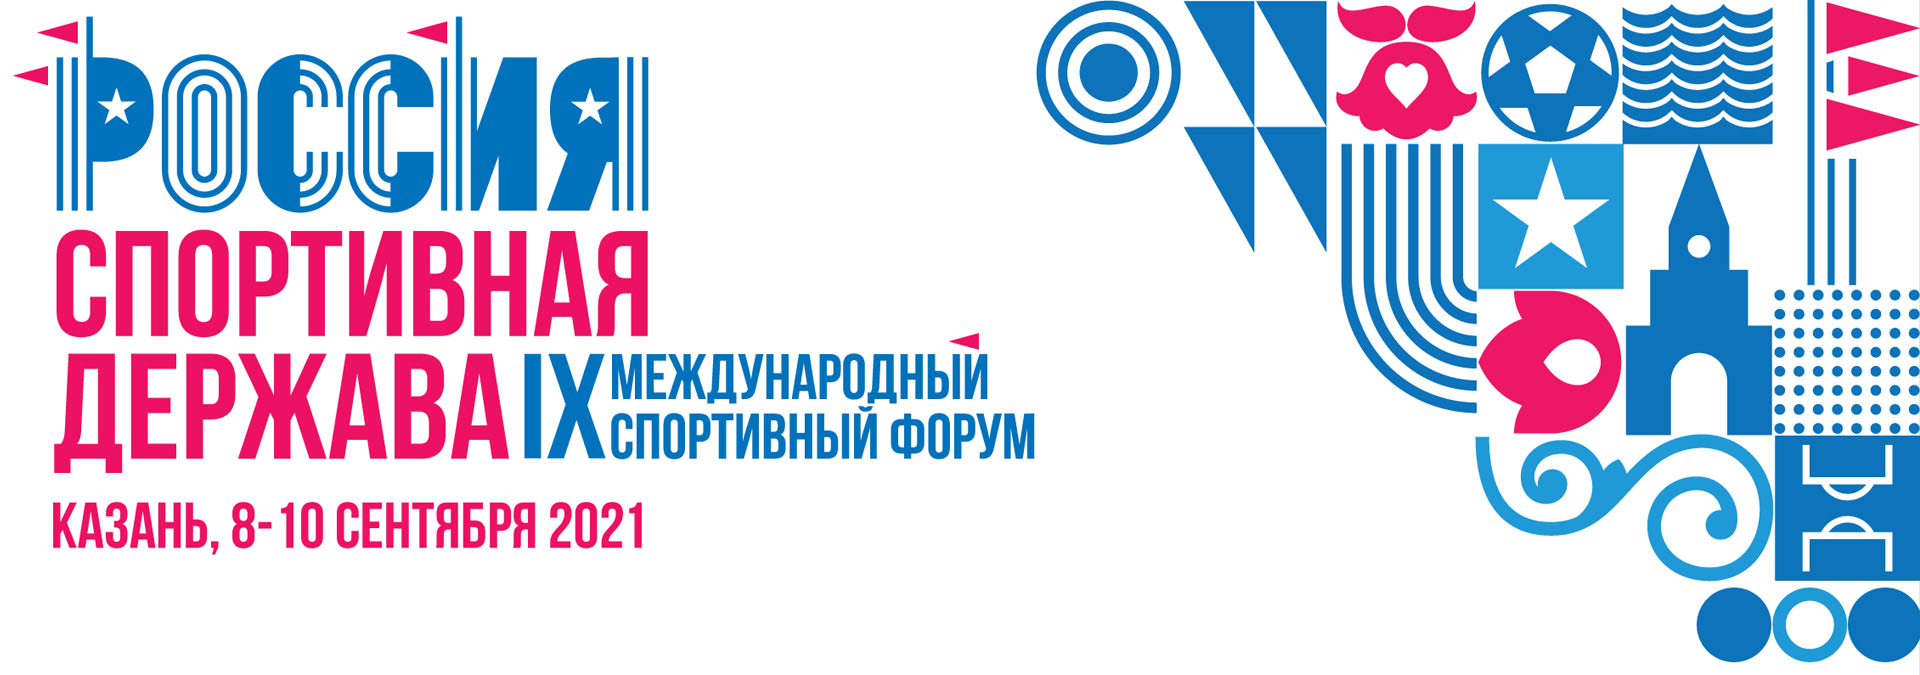 Завтра в Казани начнет работу IX Международный спортивный форум «Россия – спортивная держава»